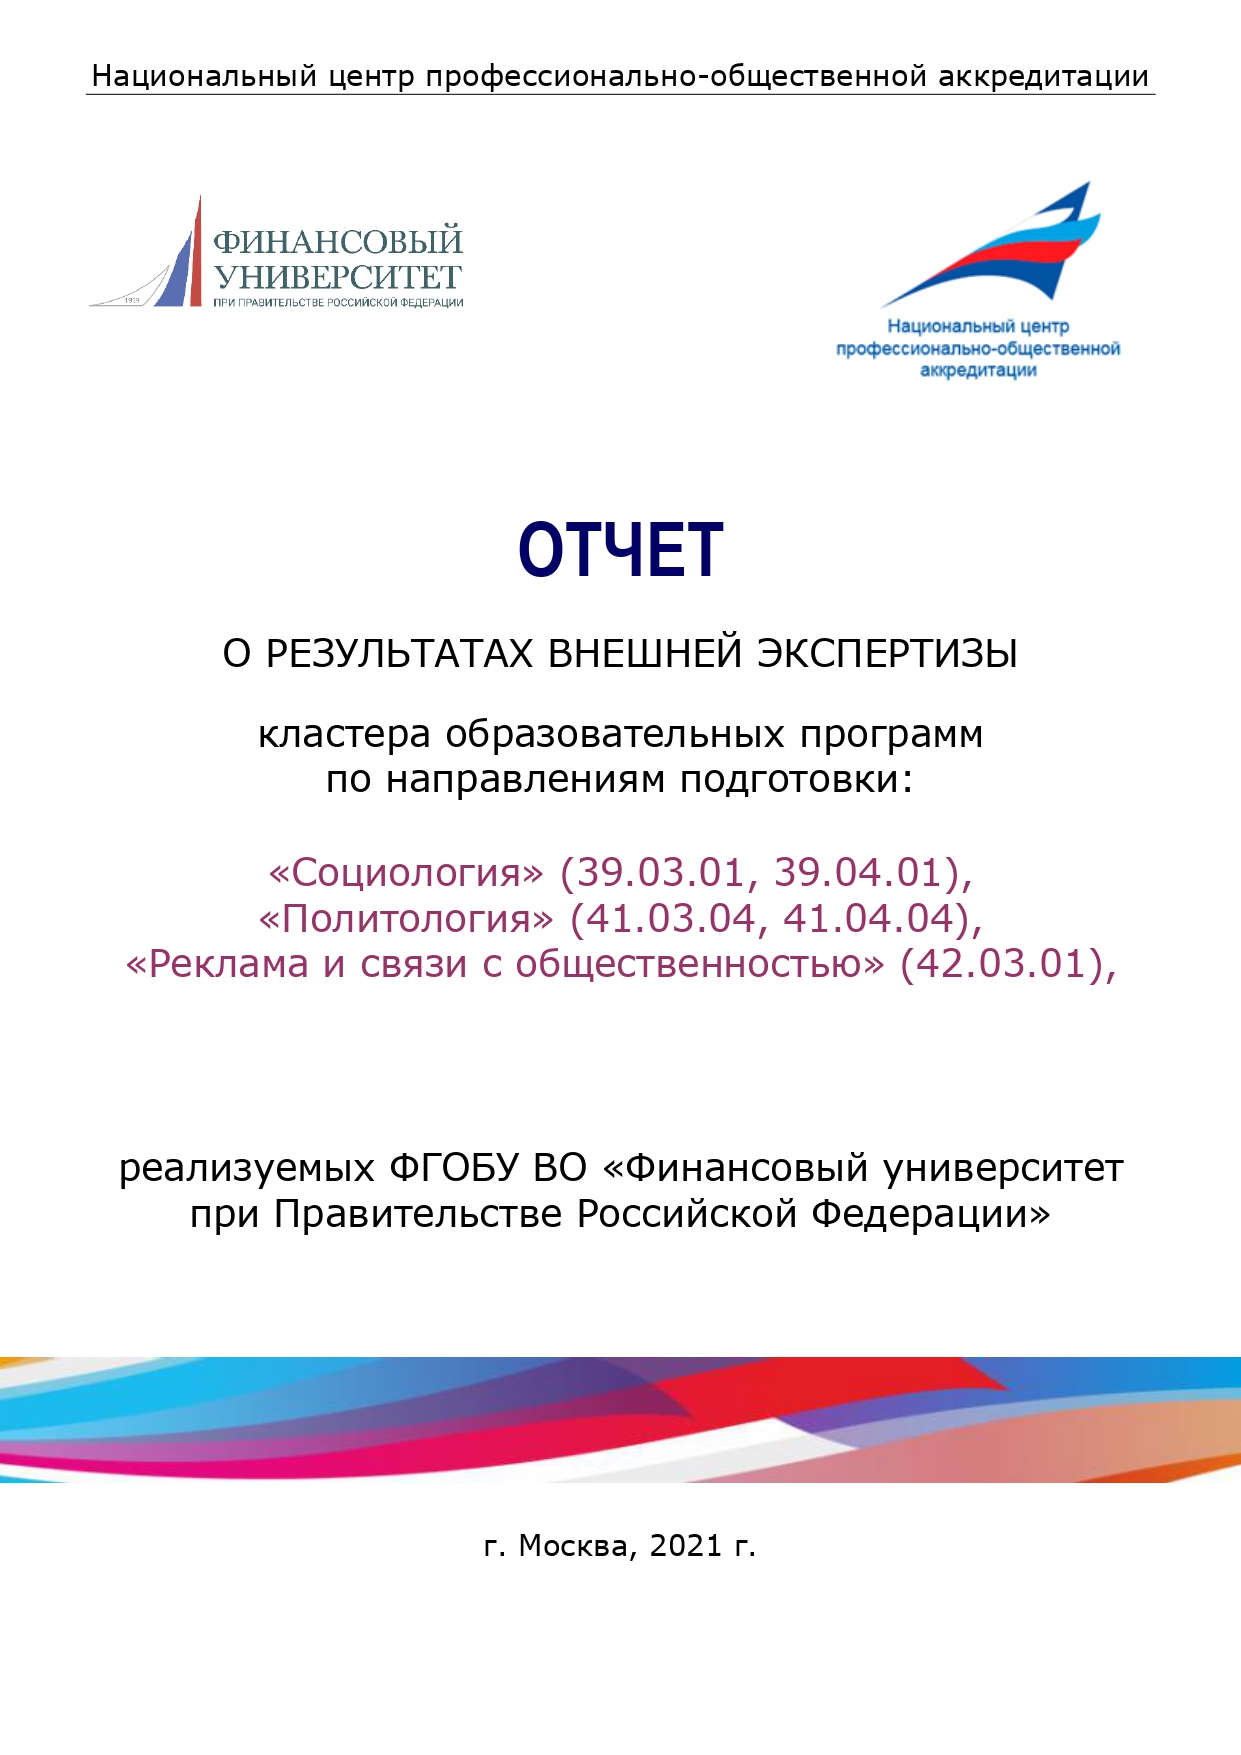 Отчет ВЭК - Финуниверситет_Социология_organized_page-0001.jpg